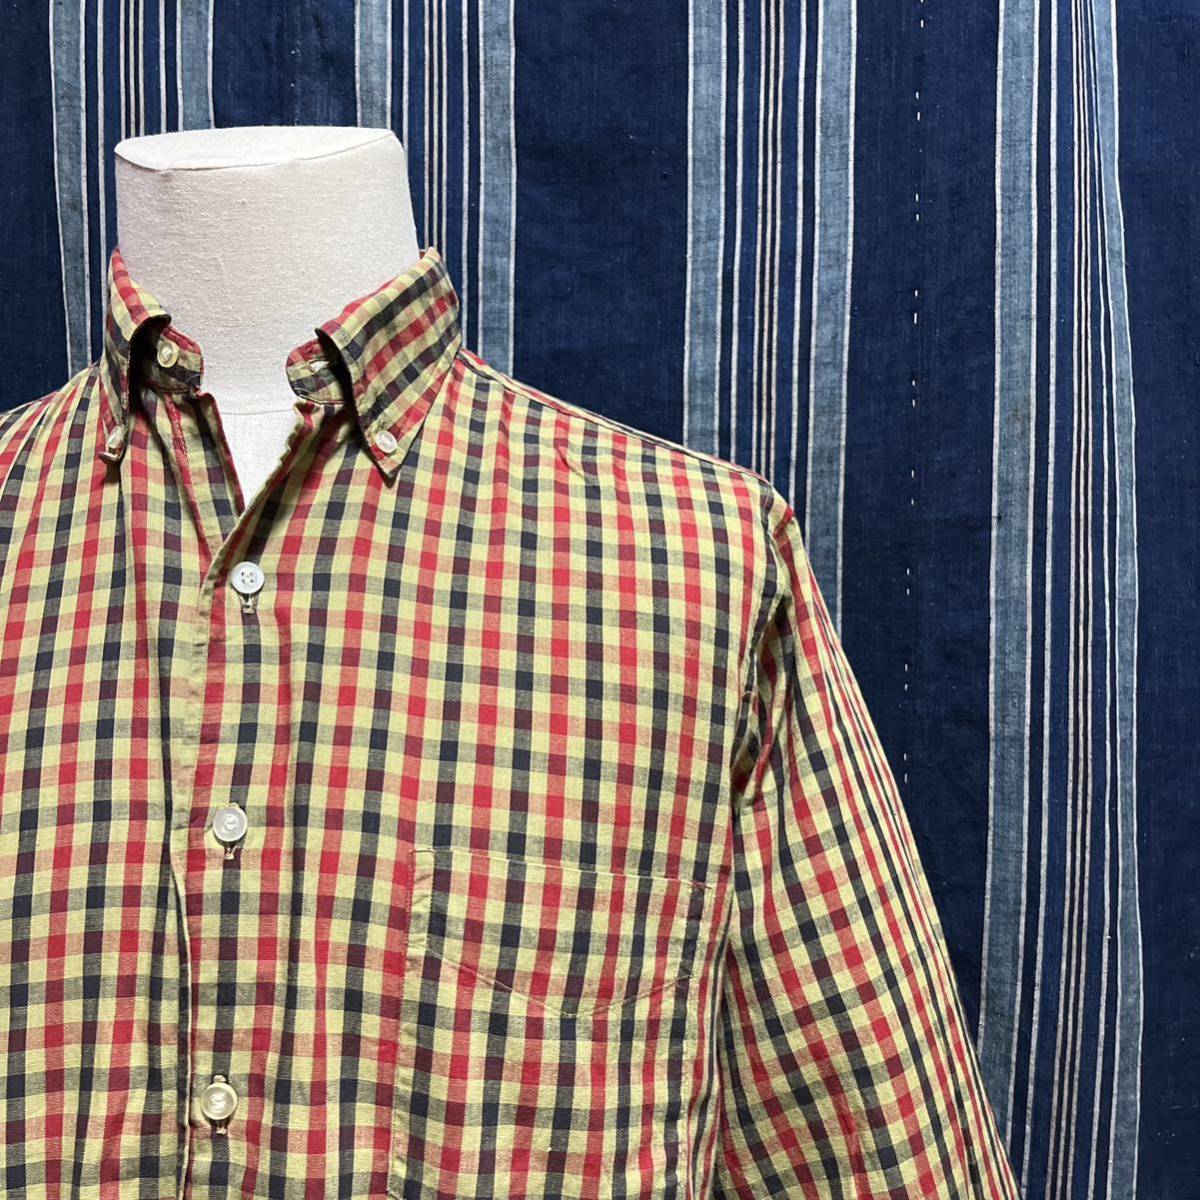 60s nudelmans b.d shirt 60年代 マチ付き ボタンダウン シャツ アメリカ製 プレッピー トラッド trad アイビー アイビールック ivy